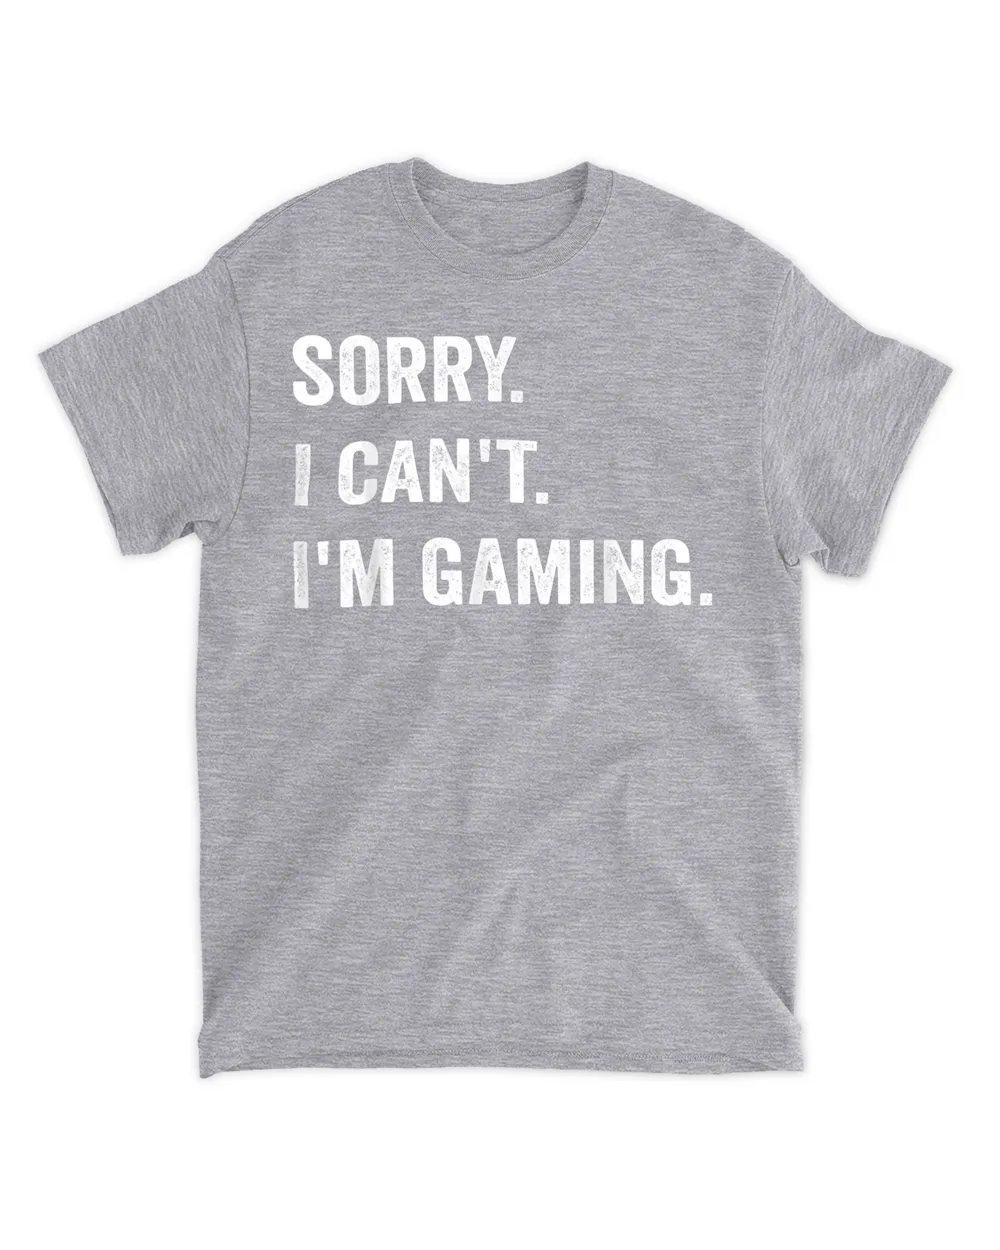 I'm Gaming Video Games Funny Gamer Gift for Boys Teen Men T-Shirt